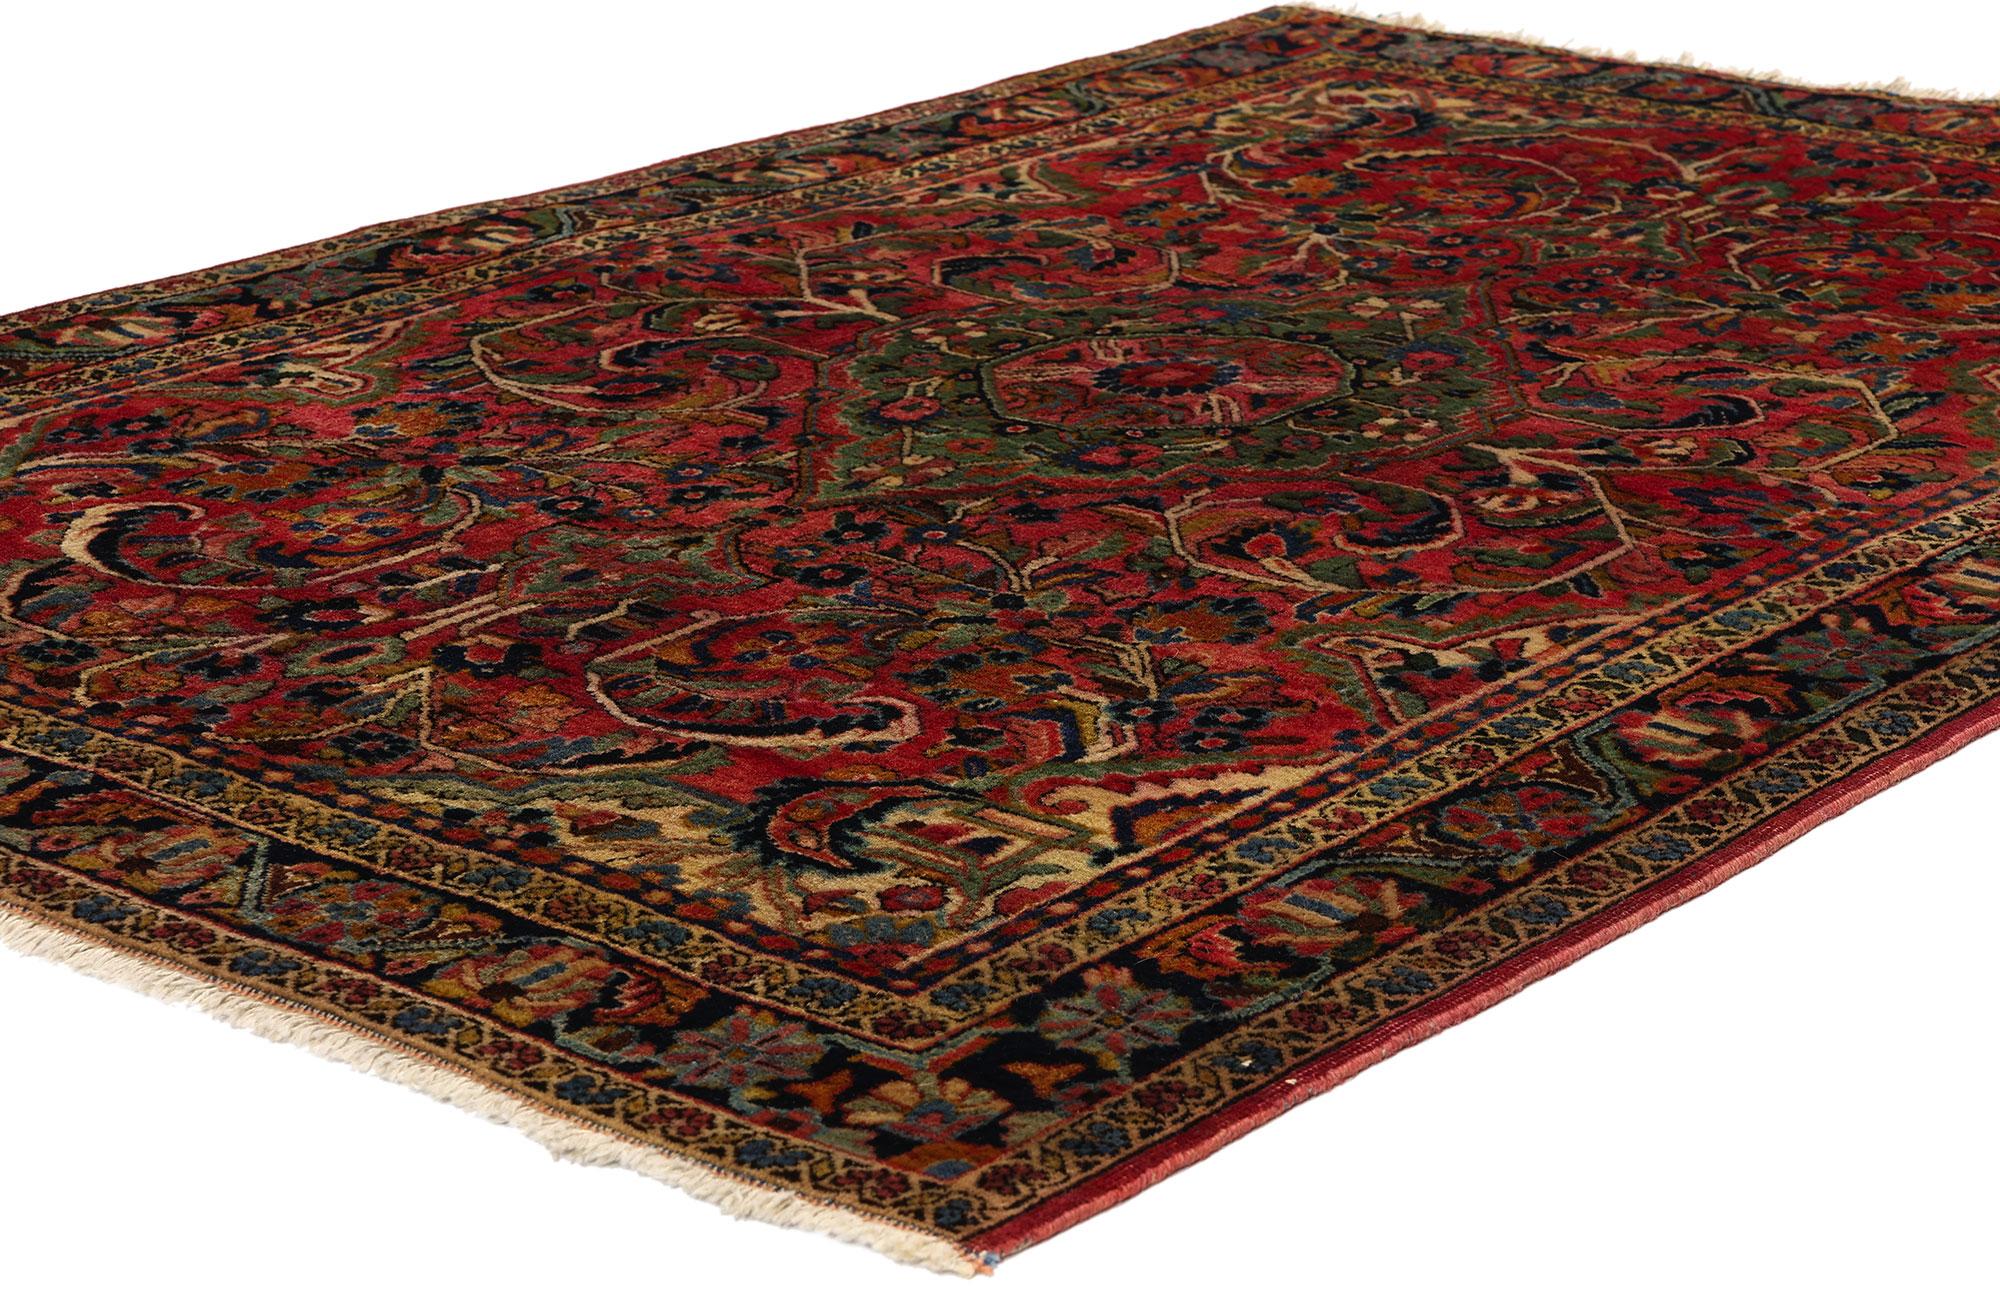 78684 Tapis persan ancien Sarouk Farahan, 03'00 x 05'00. Les tapis persans Sarouk Farahan sont un type particulier de tapis persans originaires du district de Farahan dans la région de Sarouk en Iran. Ces tapis sont réputés pour leurs motifs